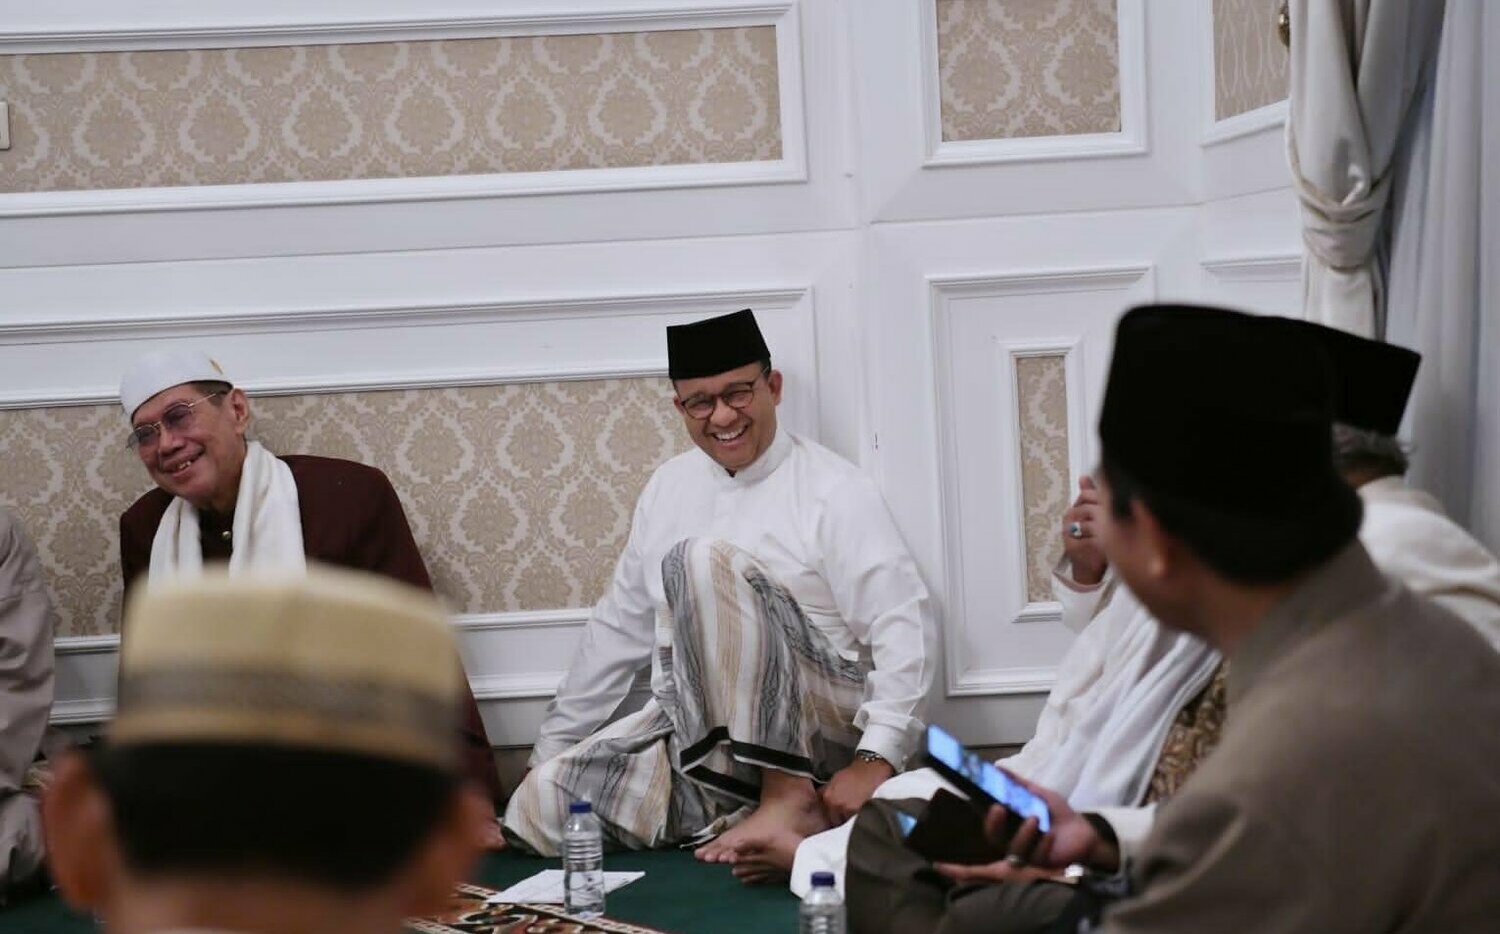 雅加達州長參選總統 印尼宗教少數擔心受到壓迫 | 國際 | Newtal